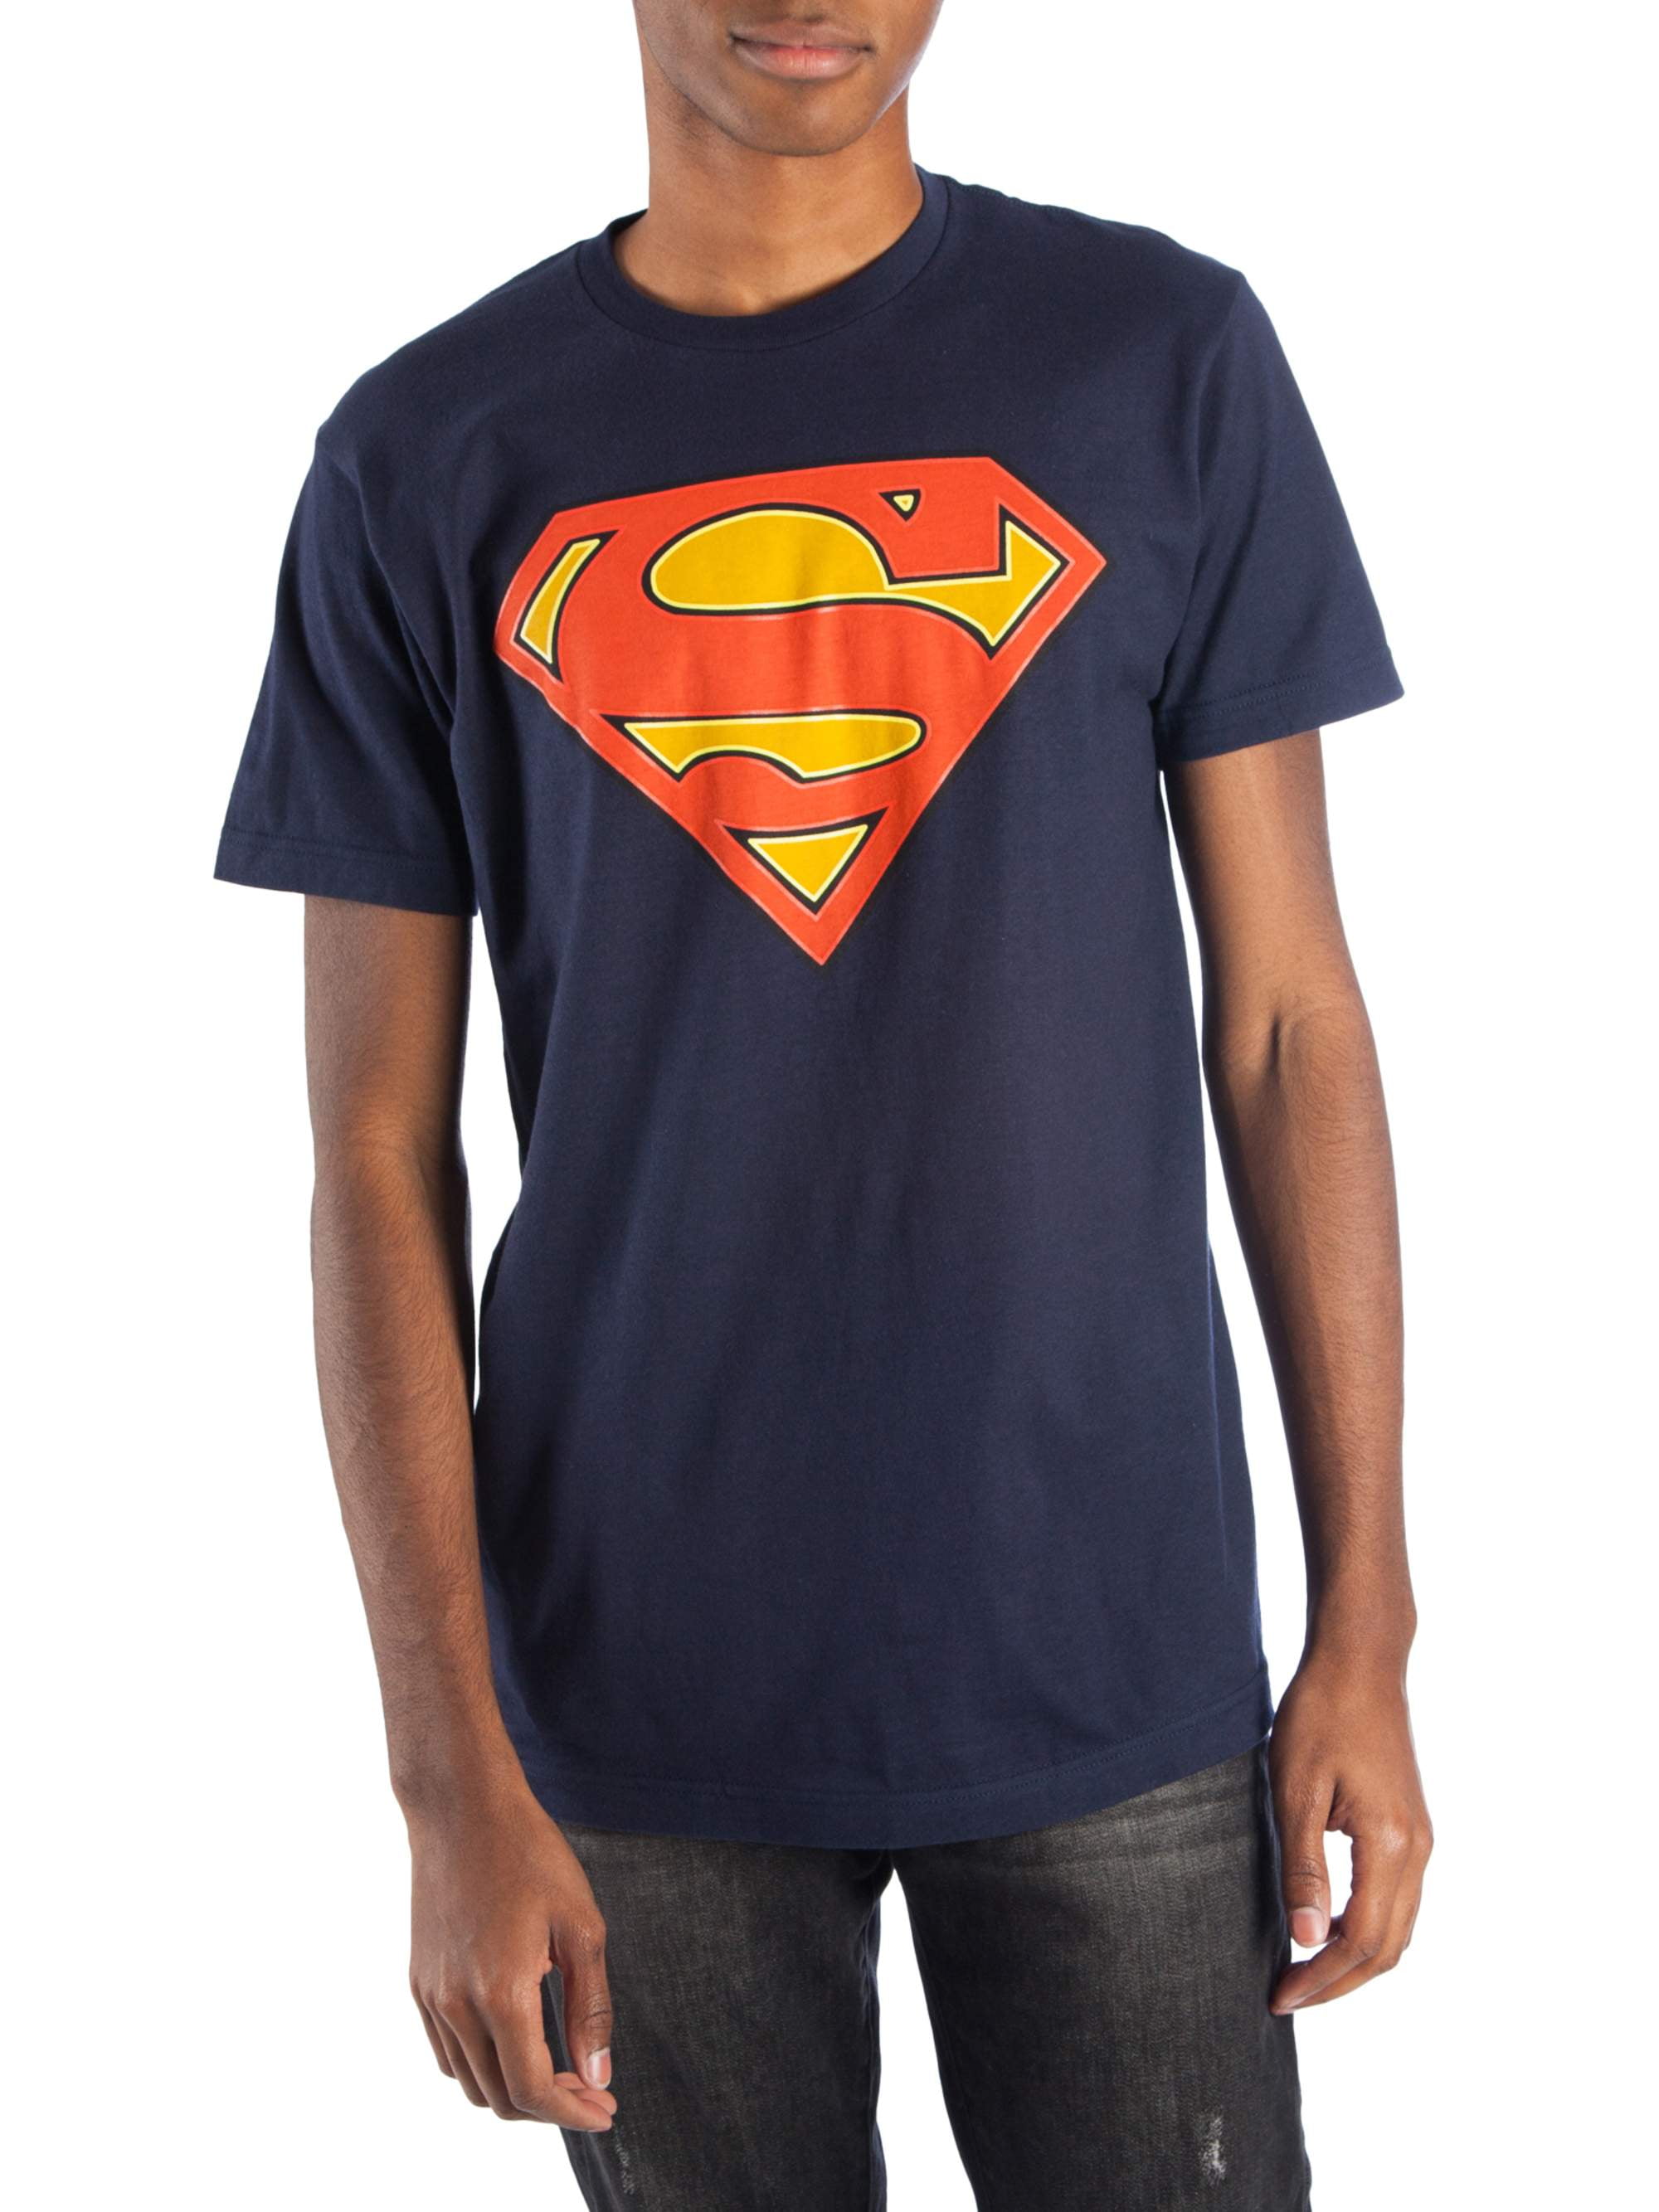 Superman Classic T Shirt Mens Tshirt Gray T-Shirt DC Comics Large Cotton 2XL 3XL 